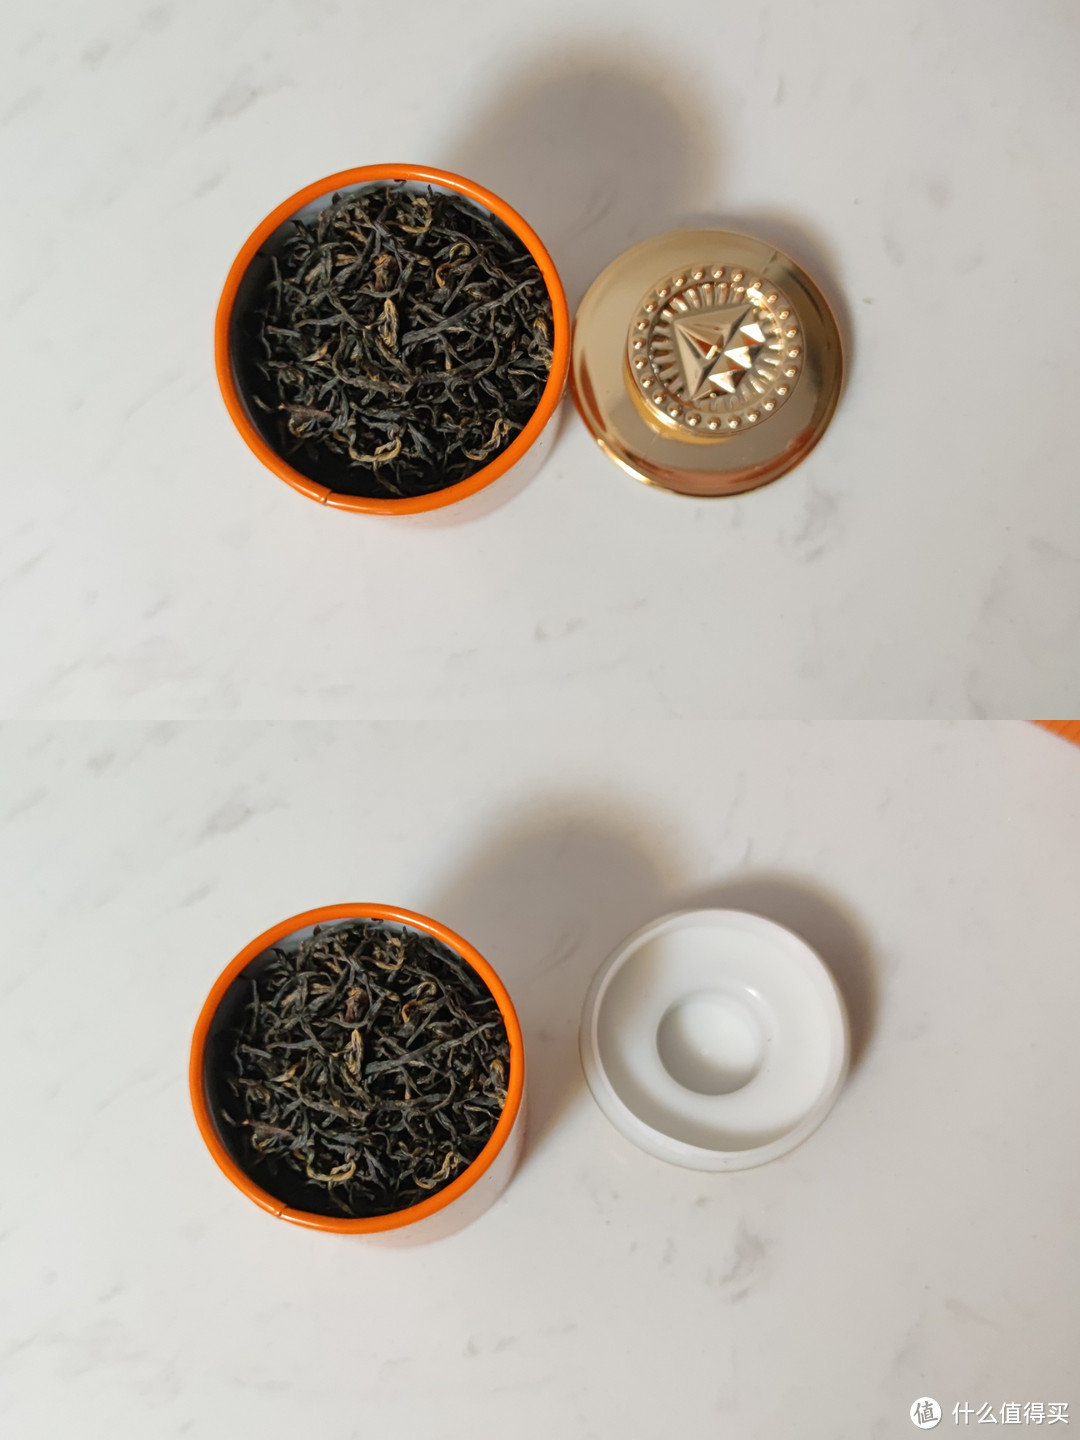 第一次尝试买红茶。不懂，真的不懂！请懂行的朋友帮忙看看这茶怎么样！谢谢。